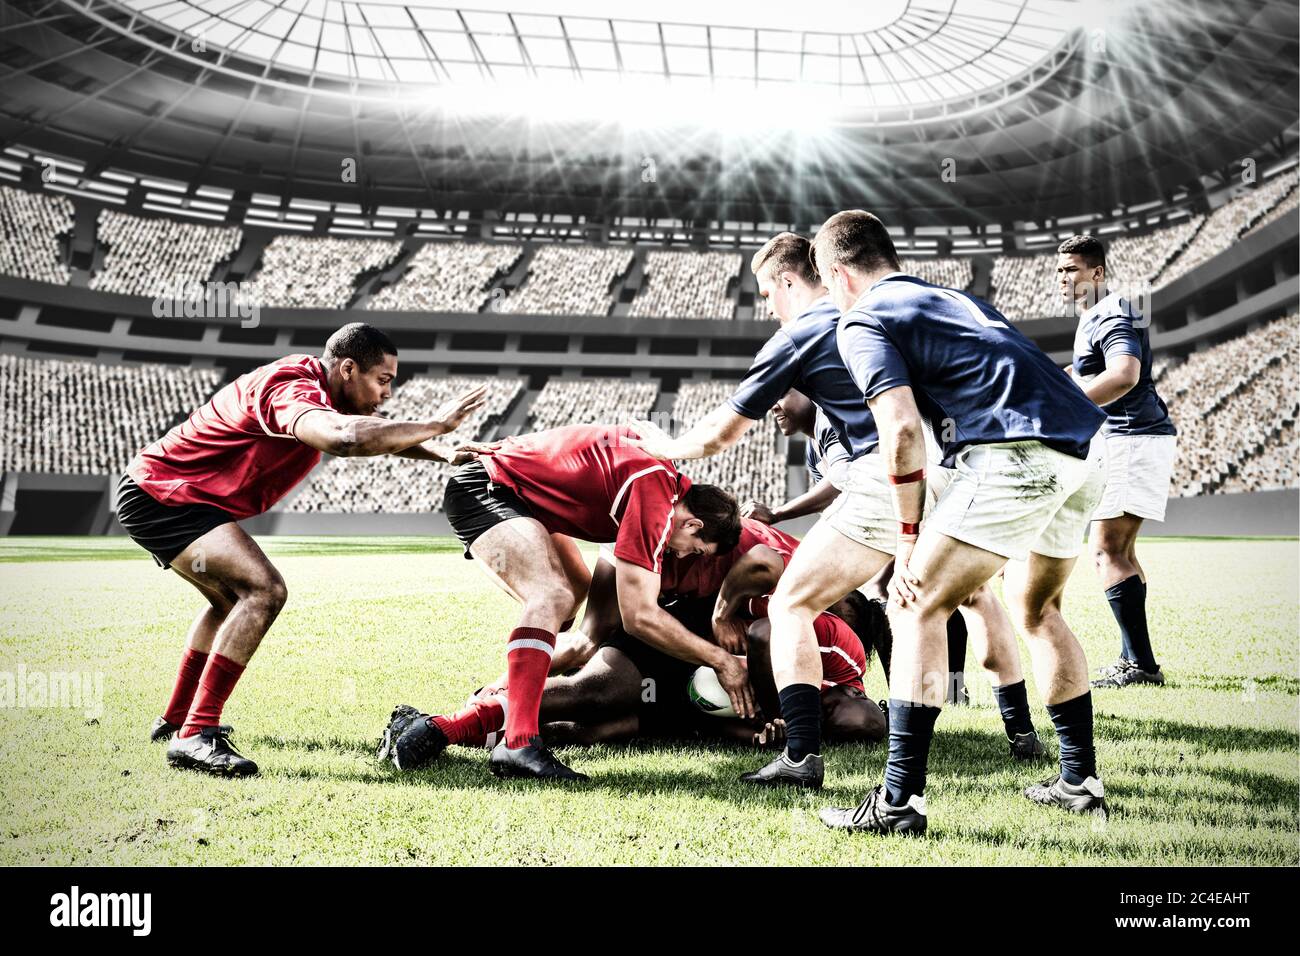 Imagen digital compuesta del equipo de jugadores de rugby enfrentándose para ganar el balón en estadios deportivos Foto de stock